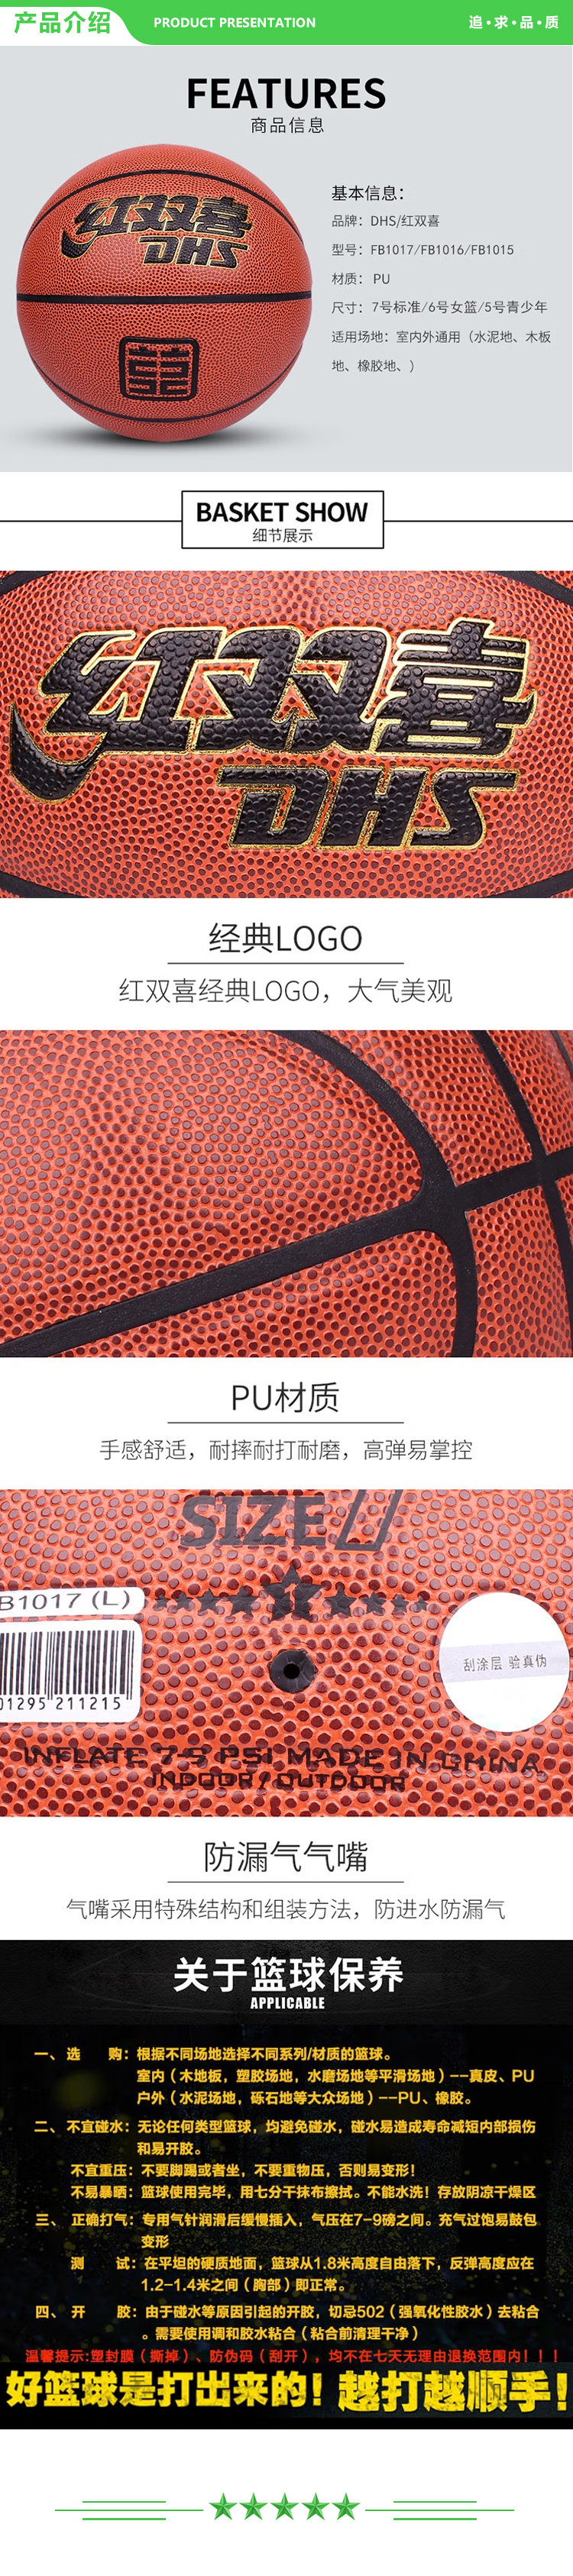 红双喜 DHS FB1015 青少年 五号篮球 一星级篮球室内外通用棕色PU球  一星级PU篮球   (2).jpg